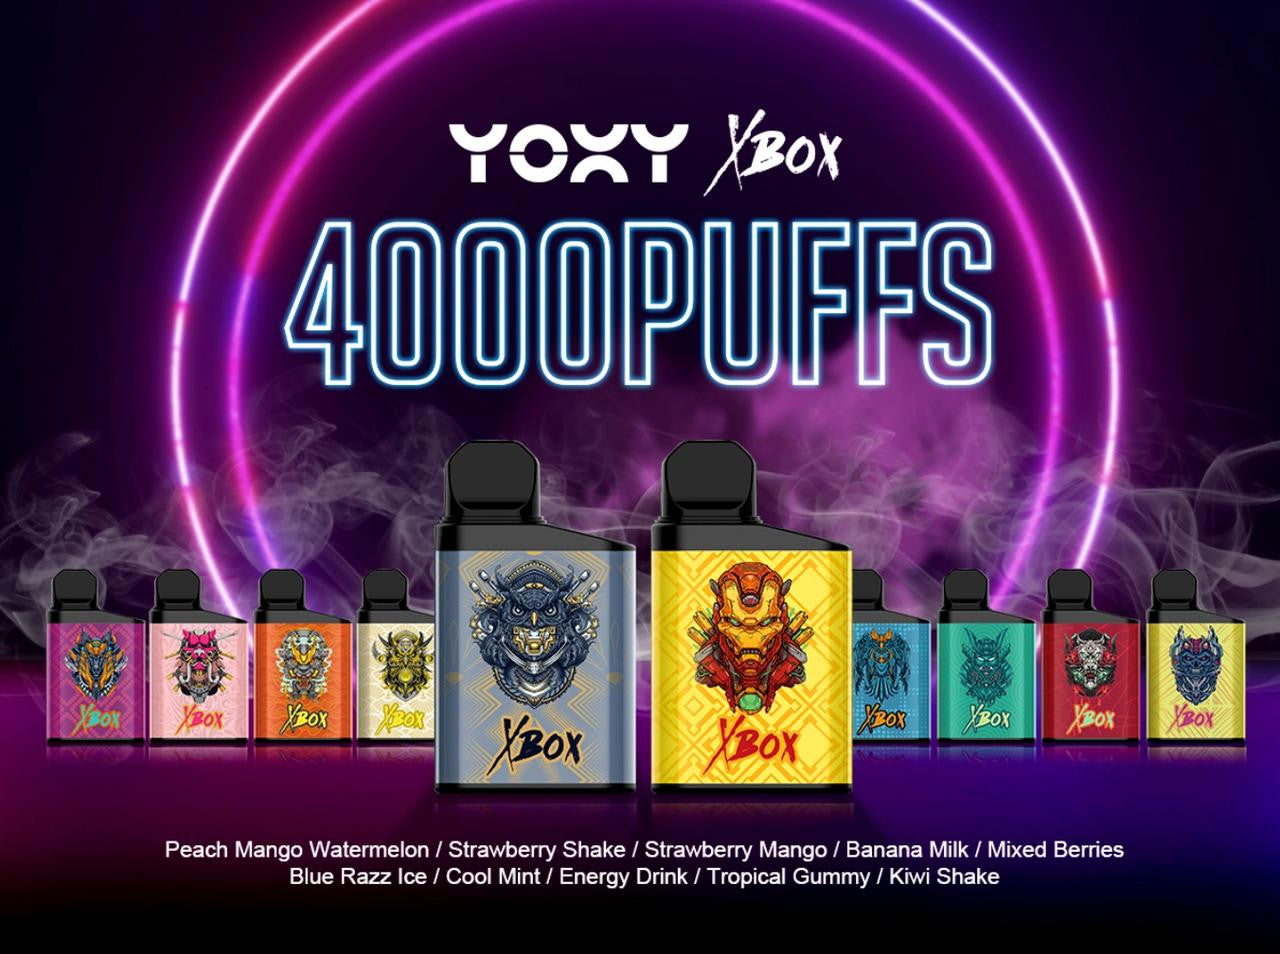 YOXY XBOX 4000